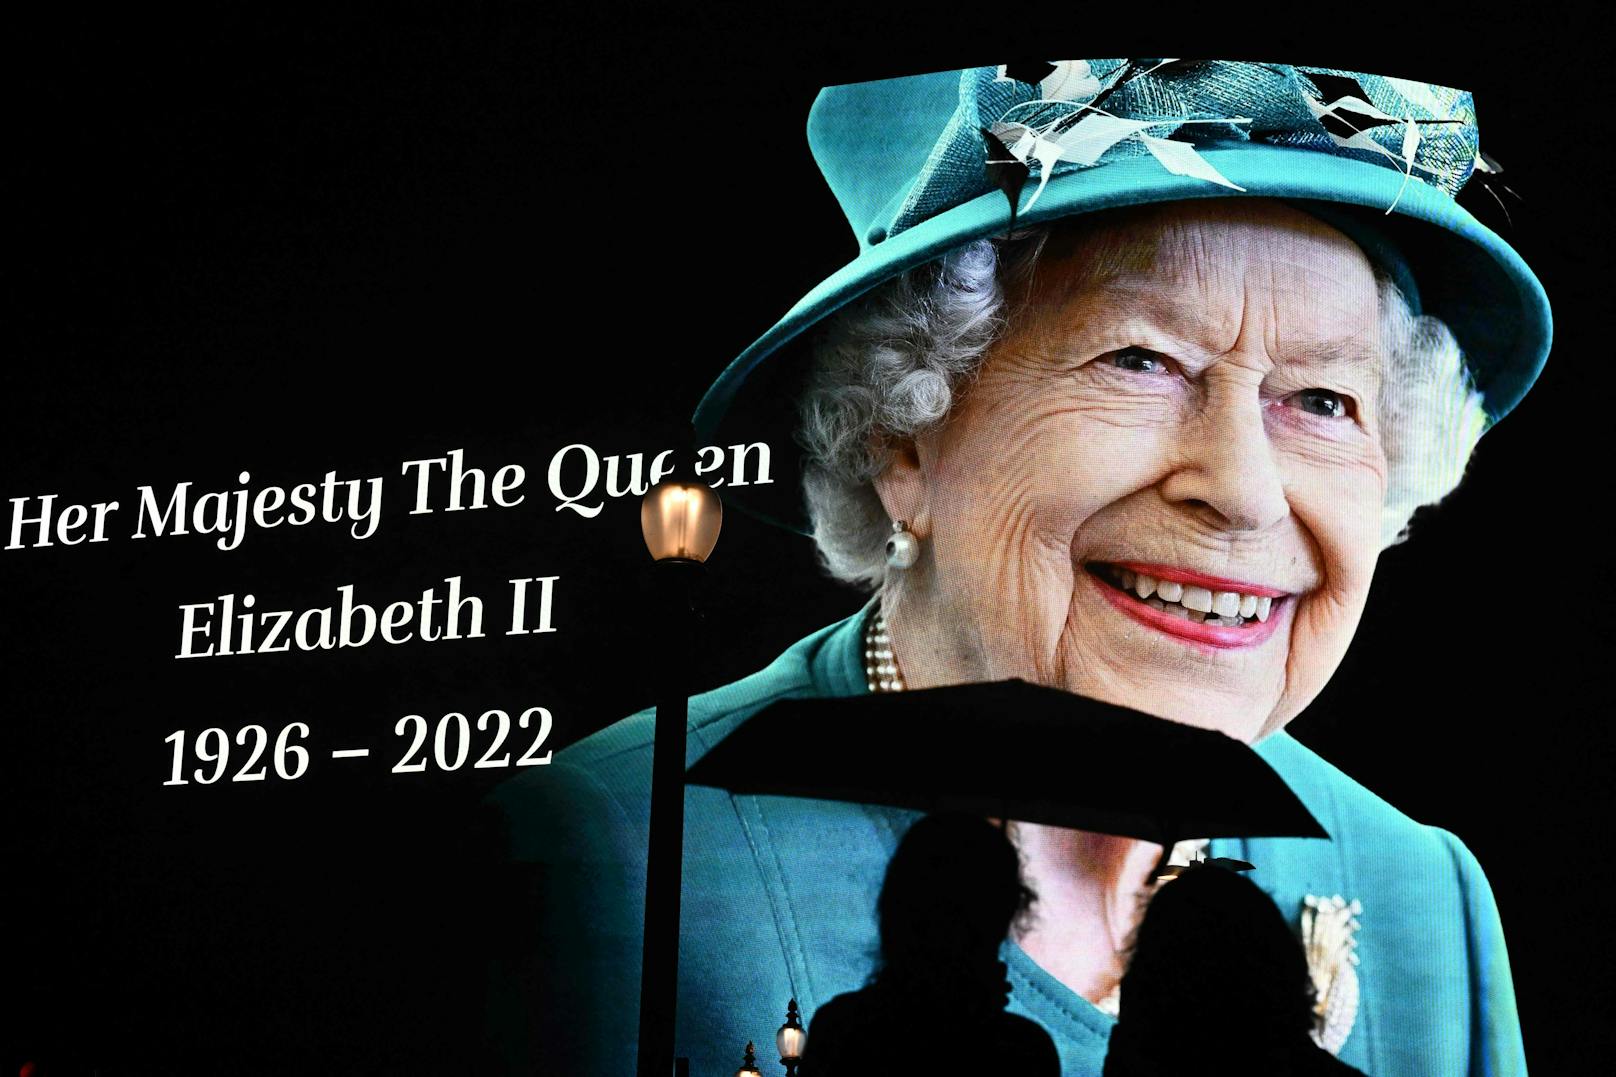 An einer Öffi-Haltestelle in London wird der Queen gedacht: Ganz Großbritannien trauert um die Monarchin.